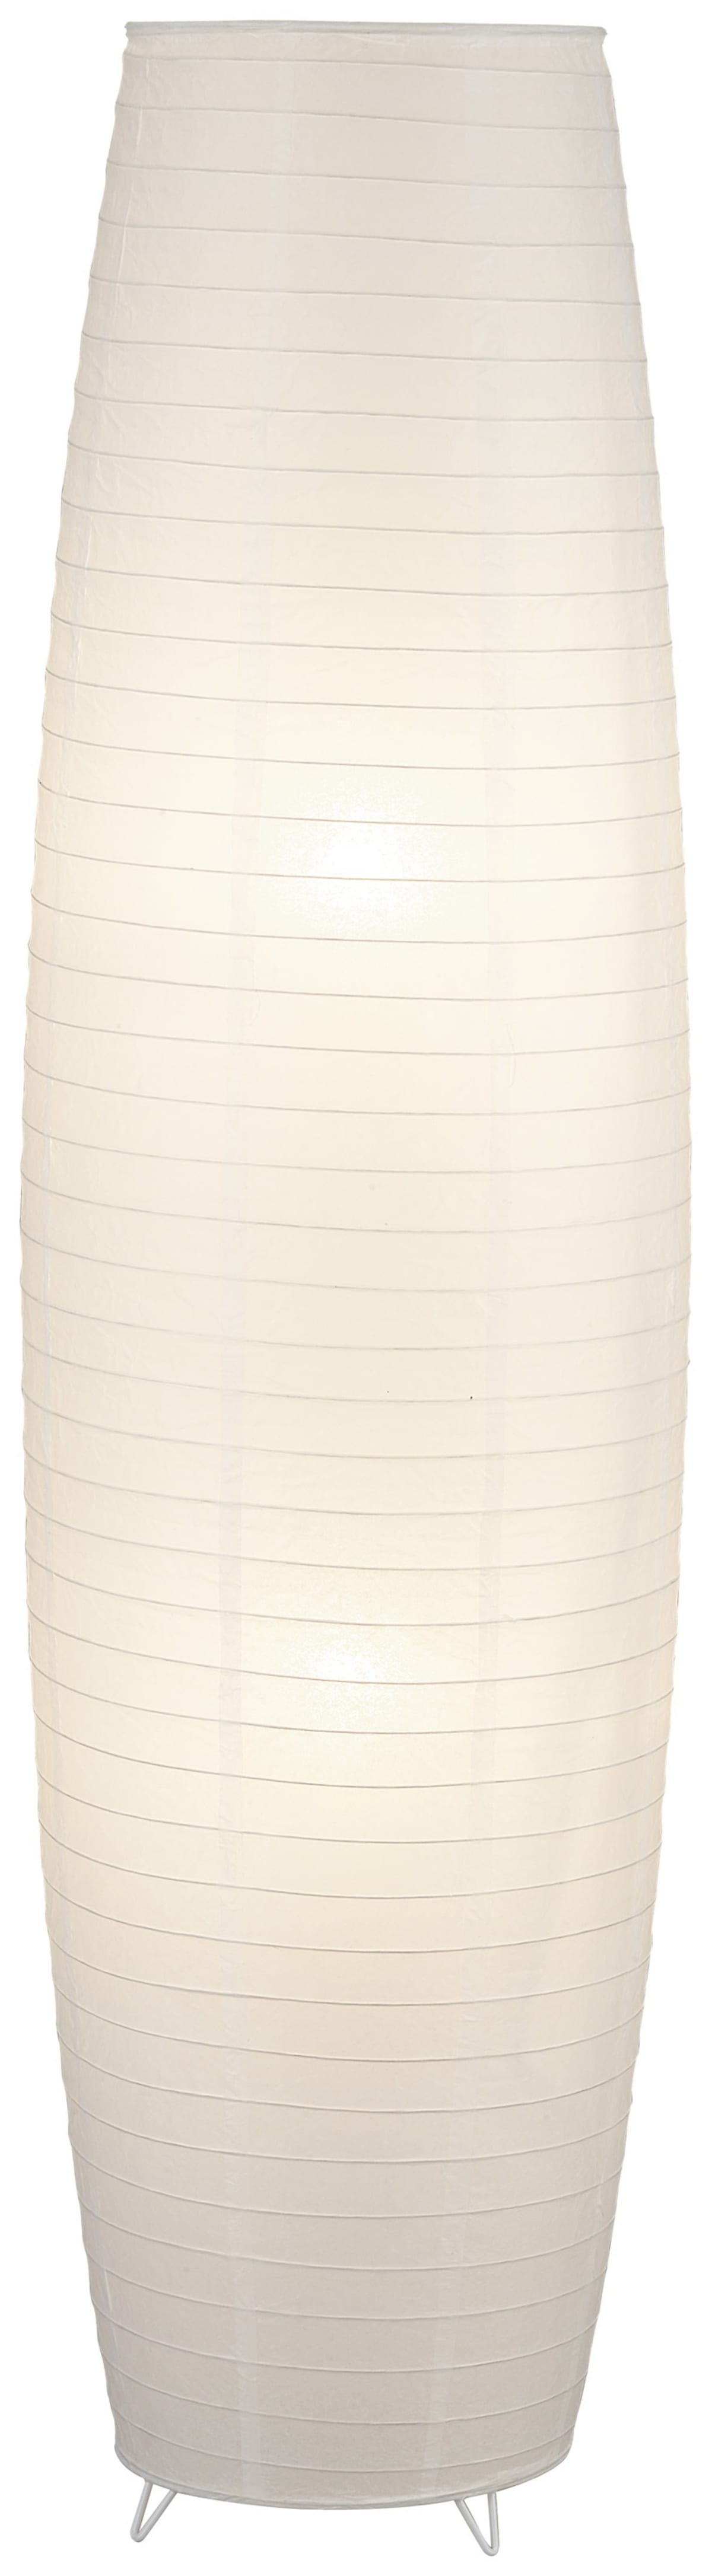 PAPER DIFFUSER FOR WHITE ANJO FLOOR LAMP H130 D36